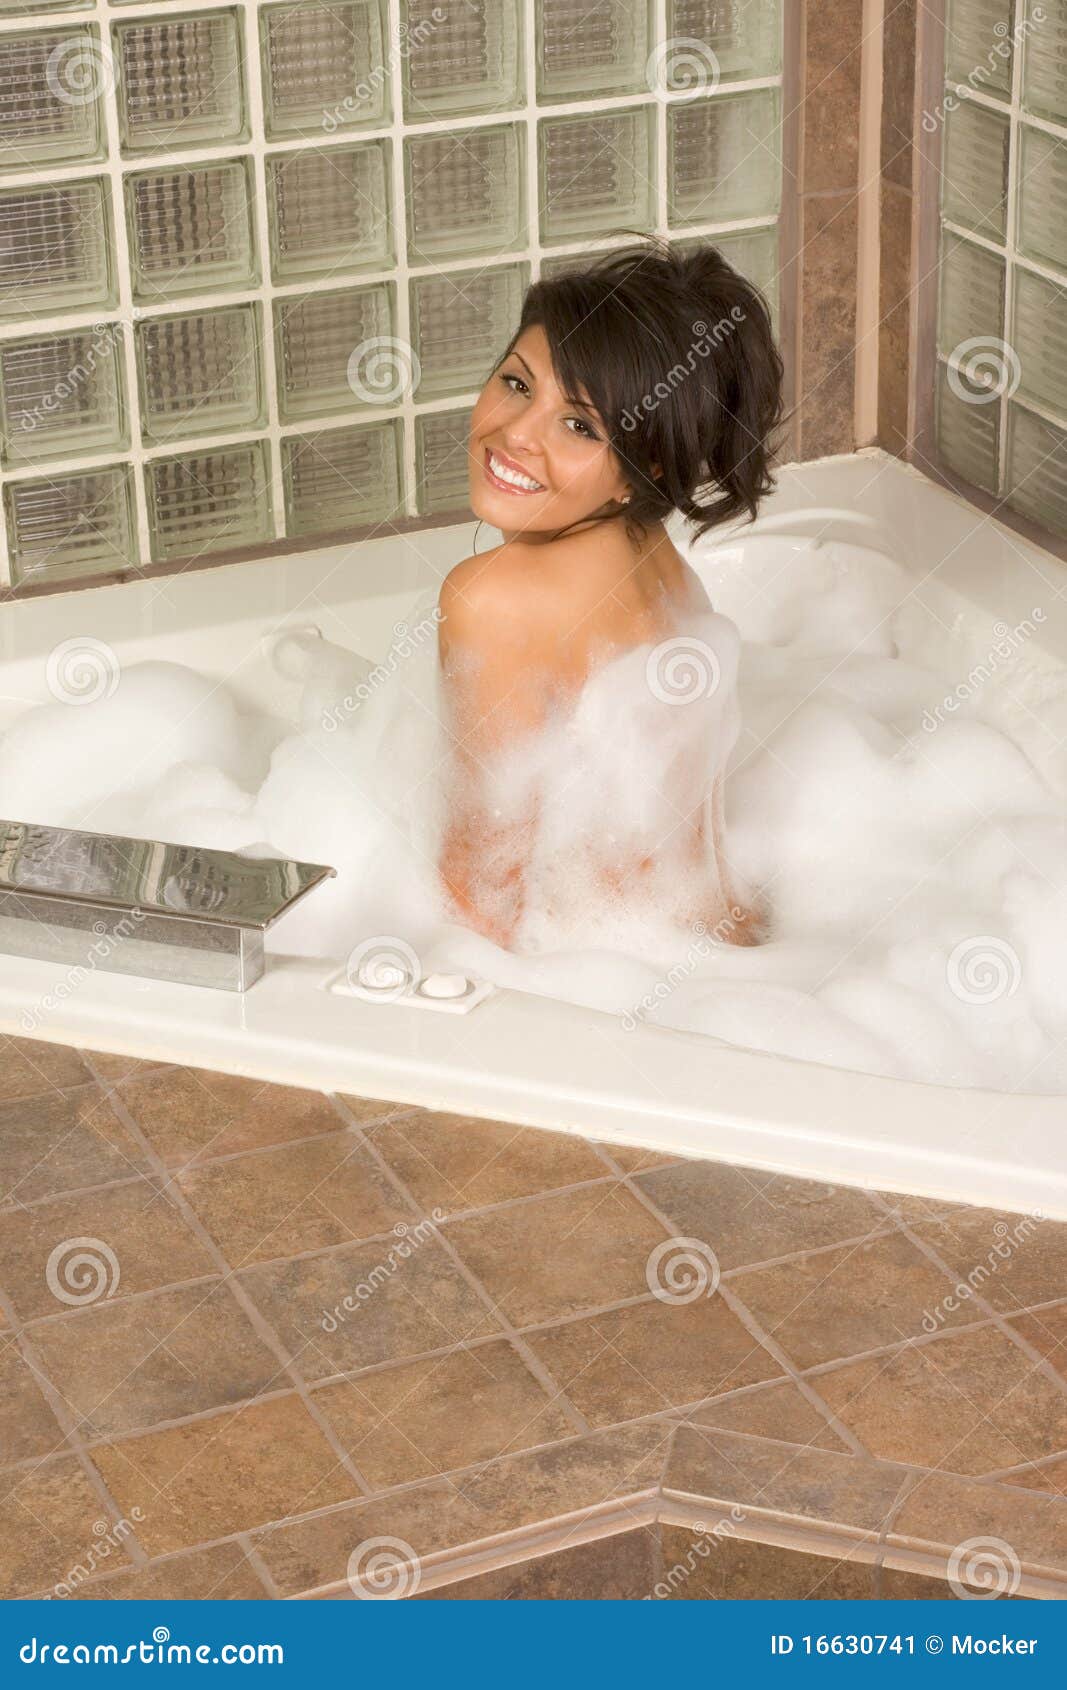 Hot Sexy Bath 53